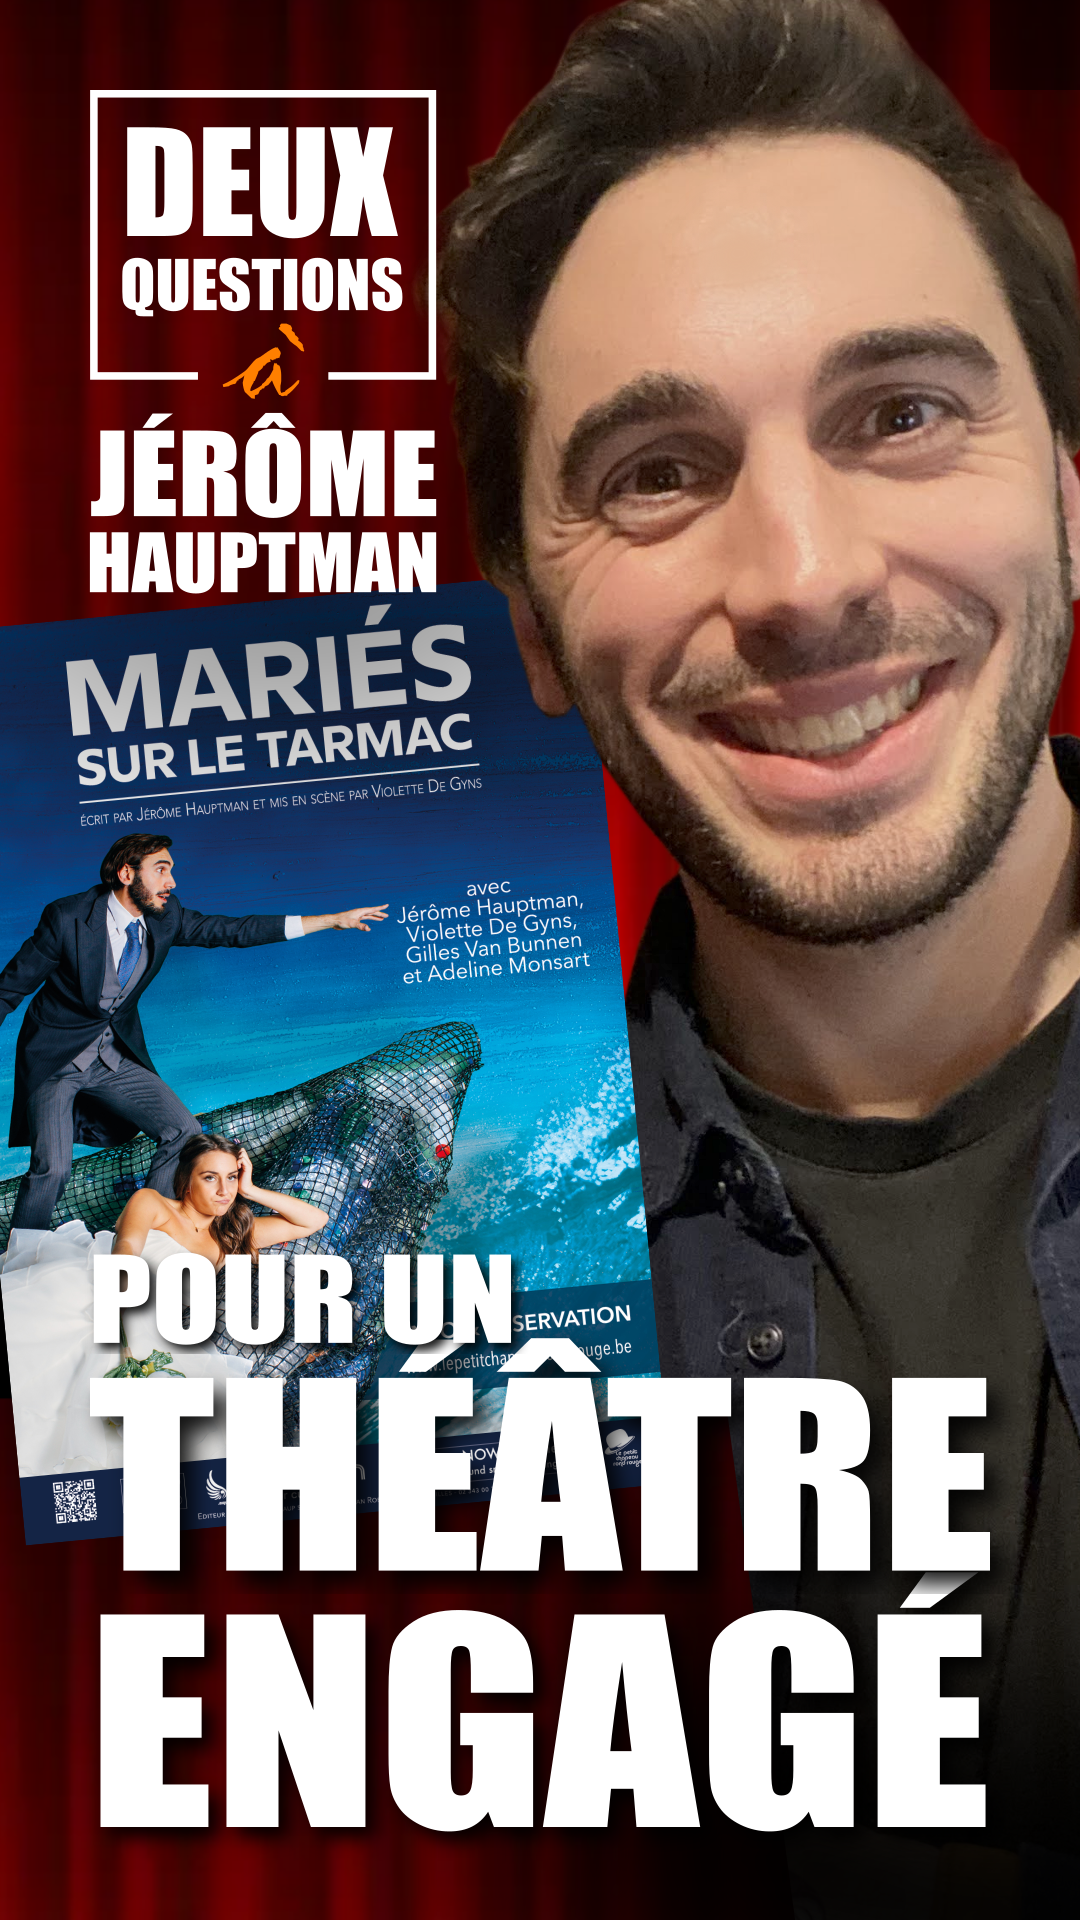 Jérôme Hauptman, comédien et auteur de pièces de théâtre. Mariés sur le tarmac et le festival artistique de l’économie bleue.